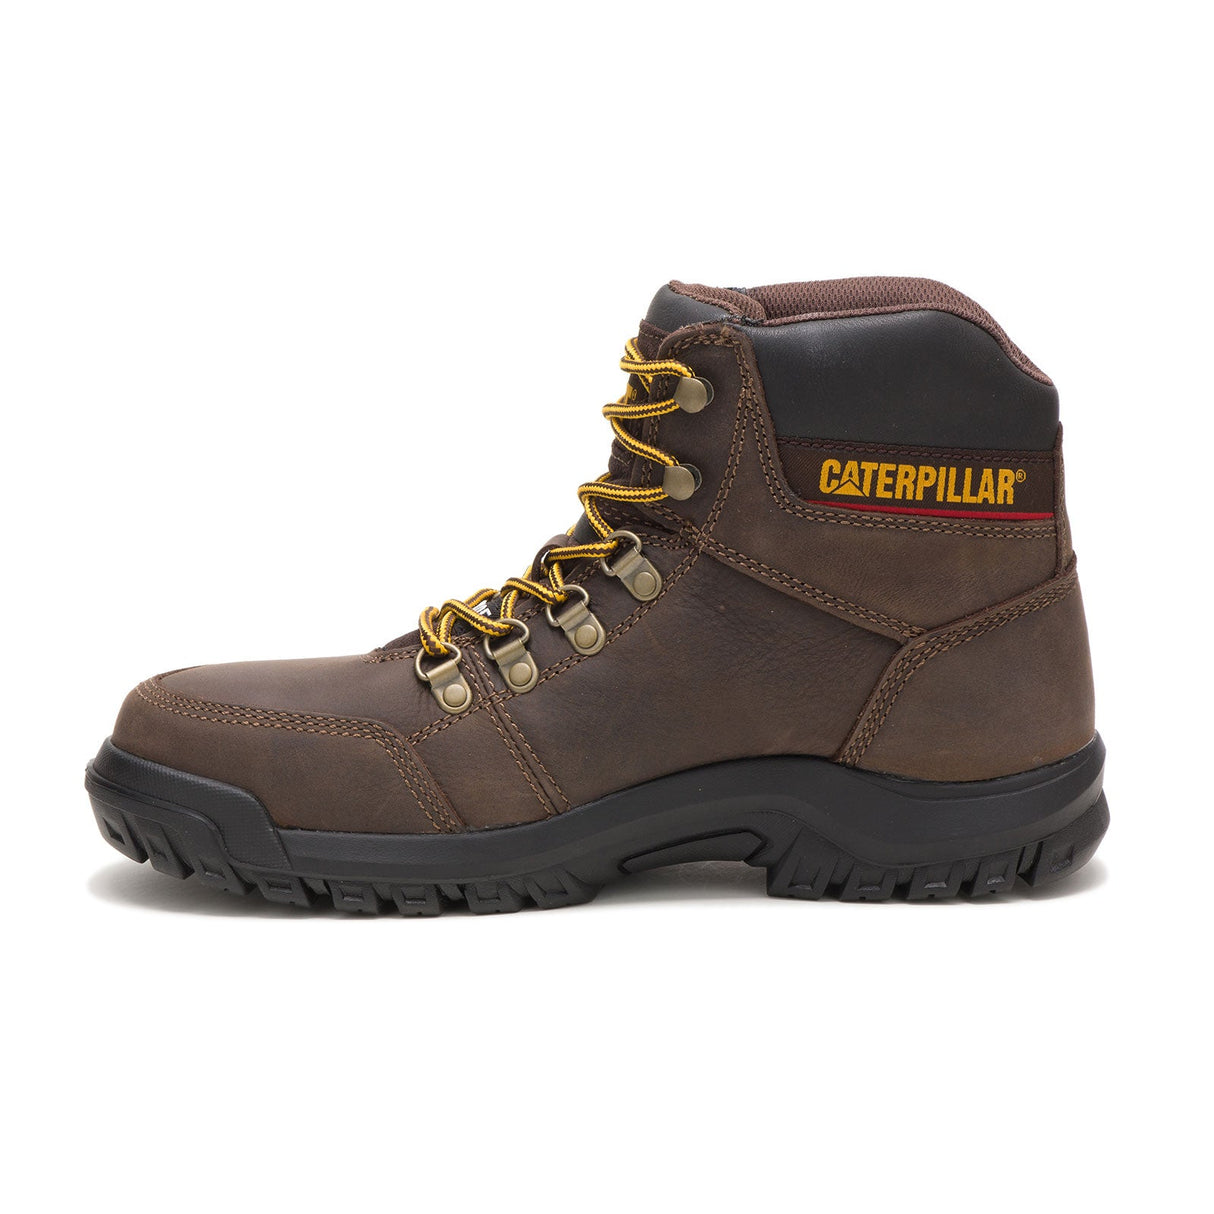 Caterpillar Outline Men's Steel-Toe Work Boots P90803-2